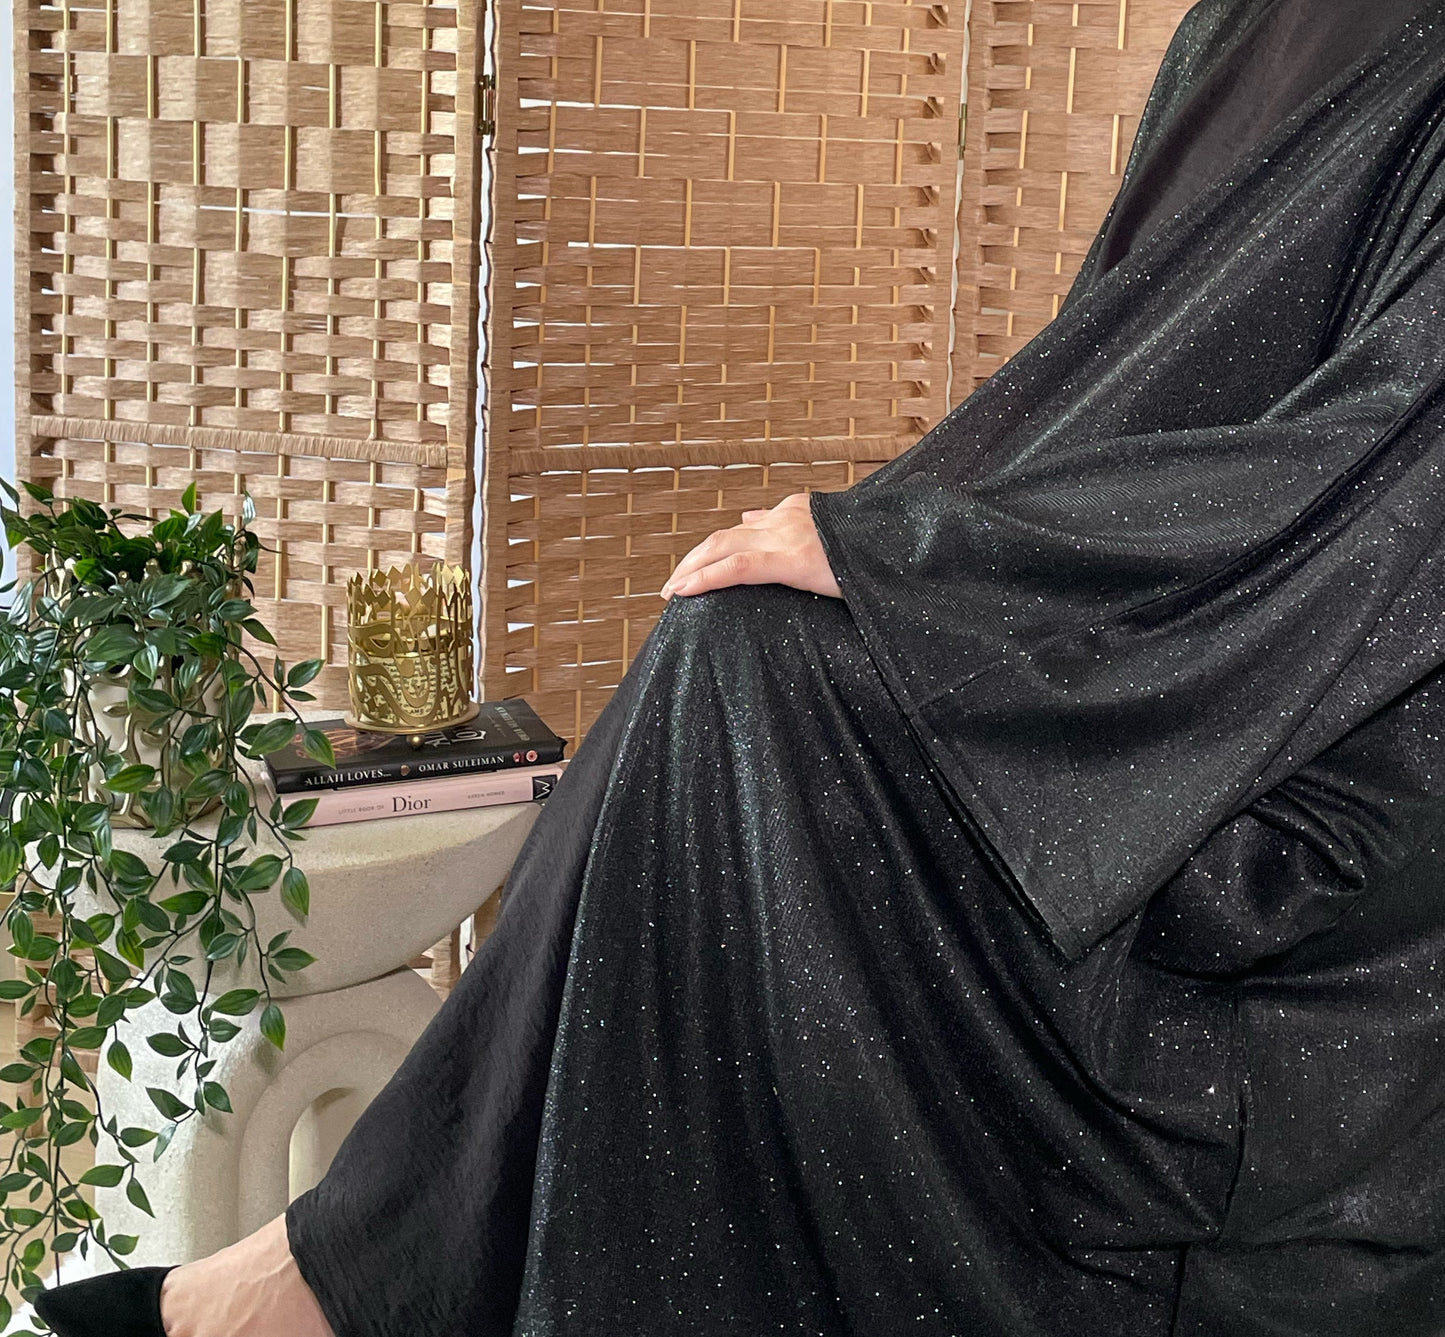 Glamorous Black Sparkly Open Abaya